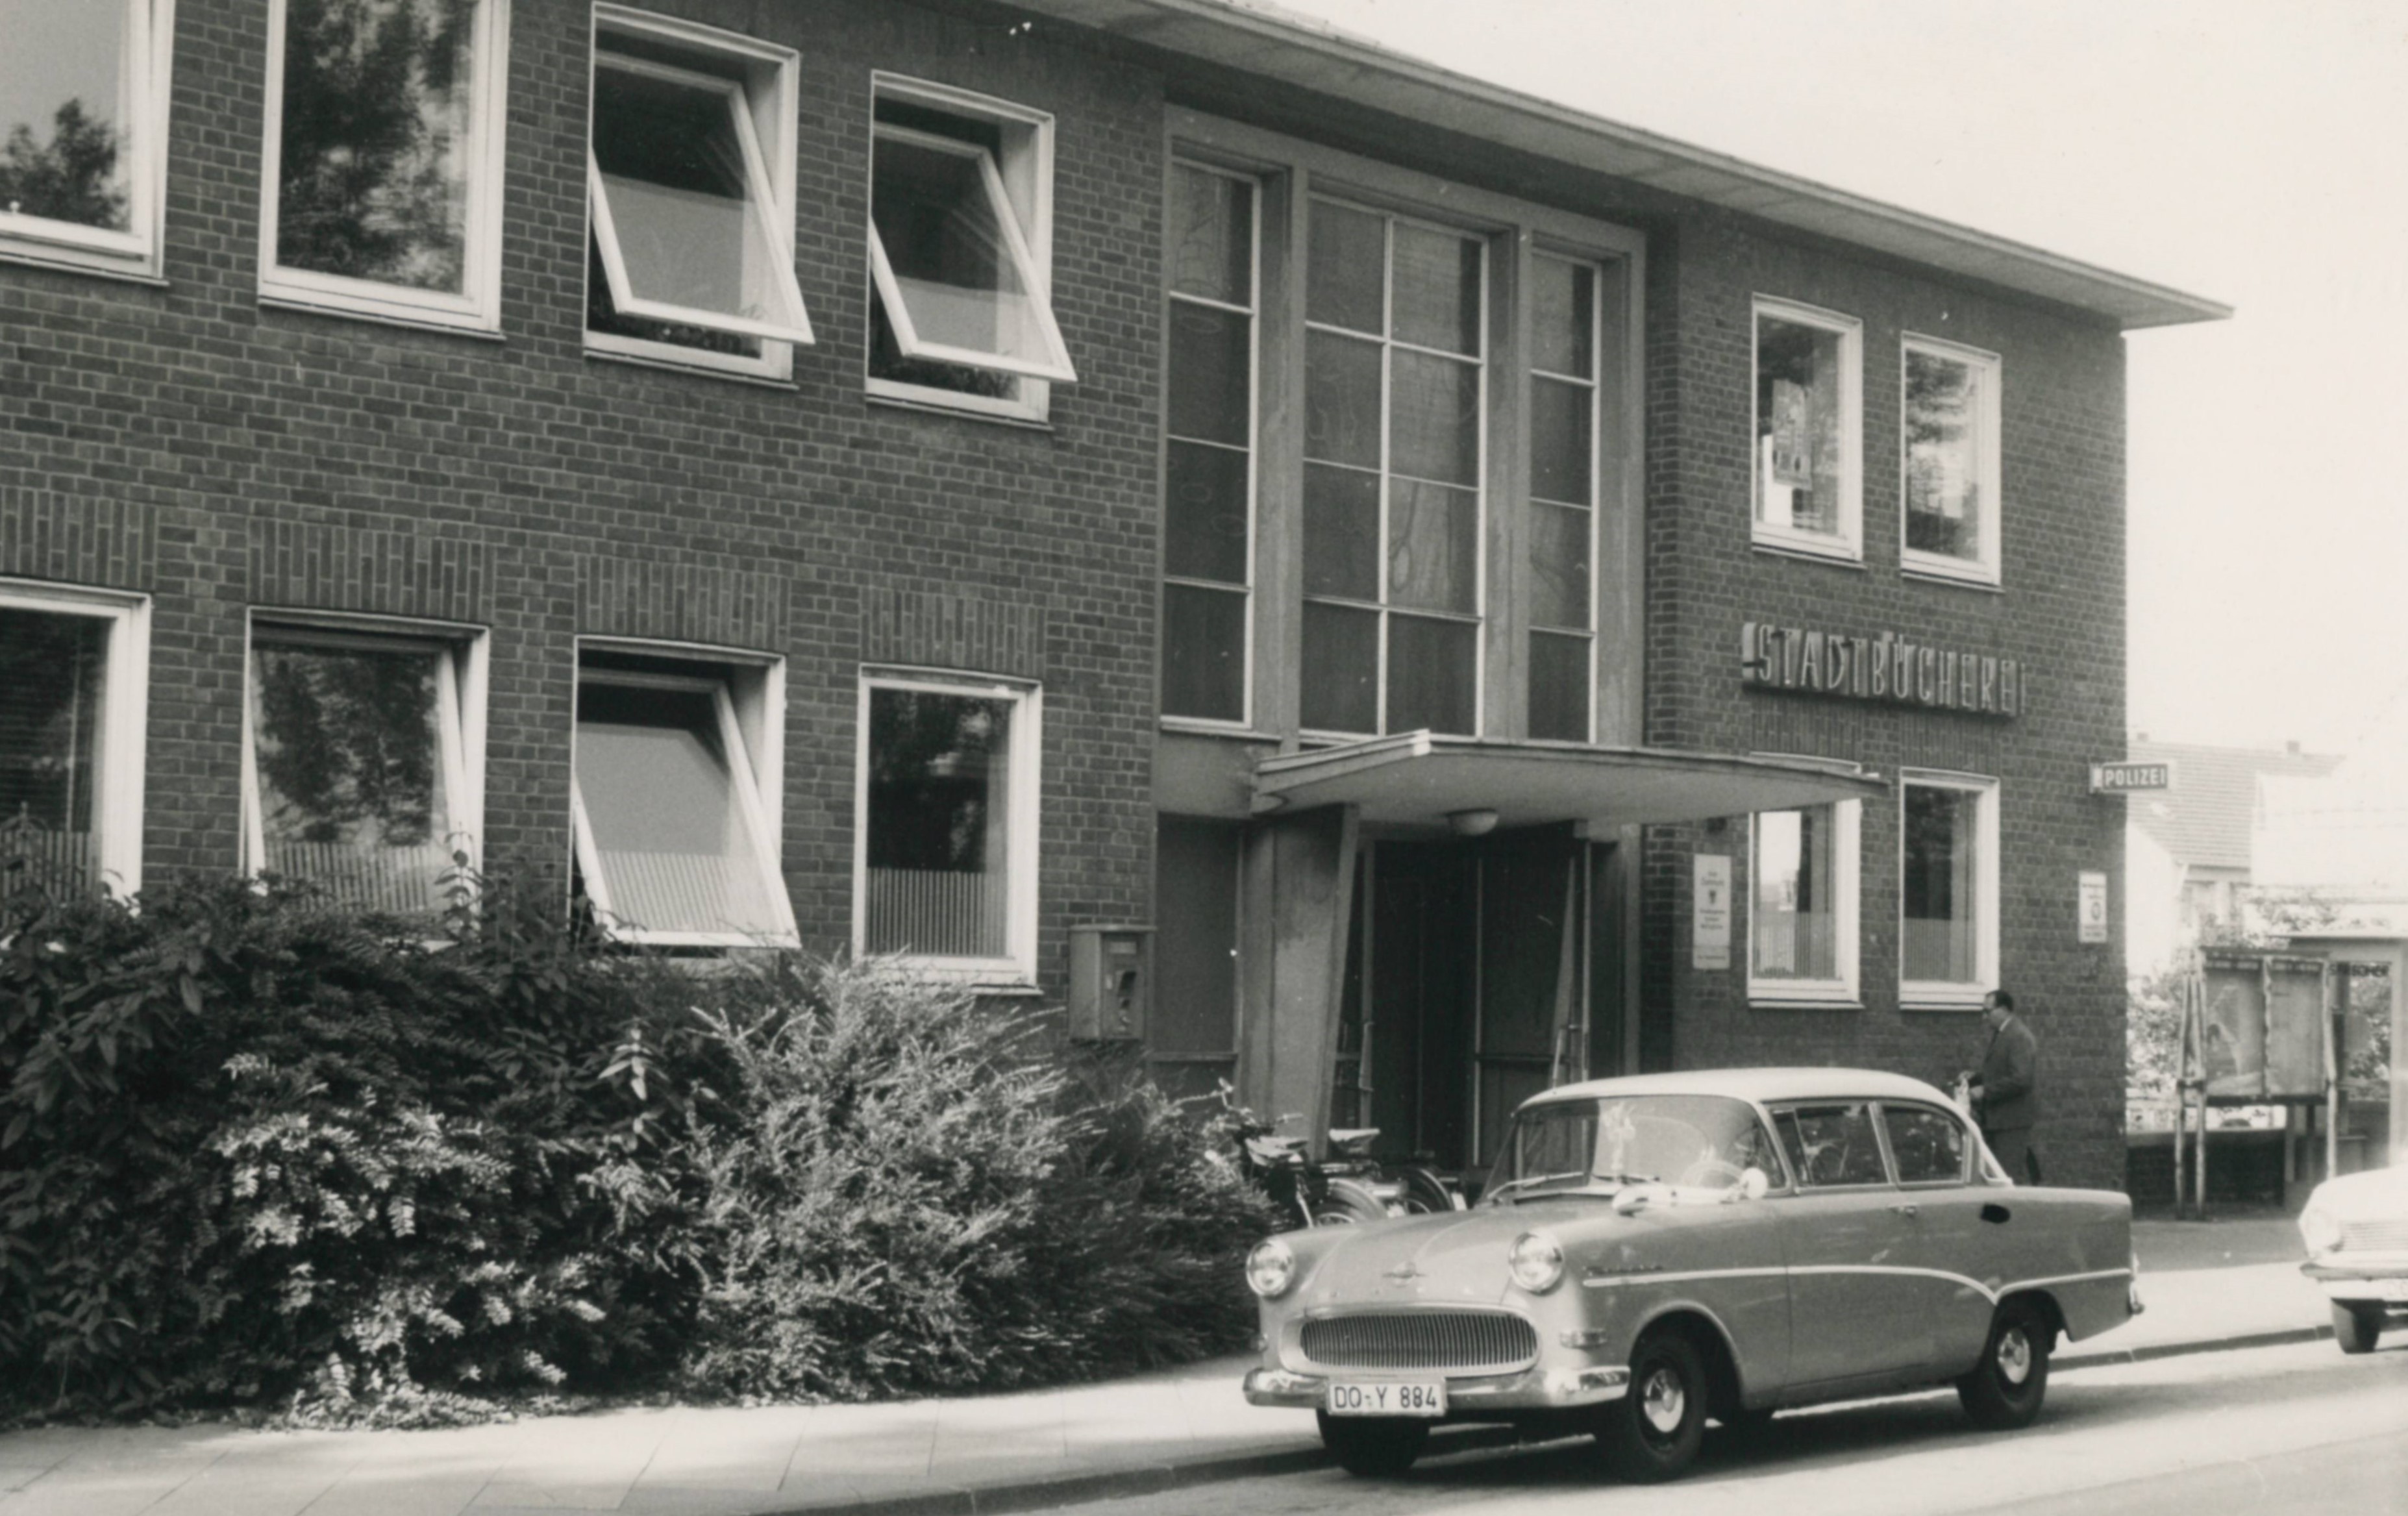 Polizeiwache Wellinghofen 1967 schwarz-weiß Außenansicht mit Auto davor